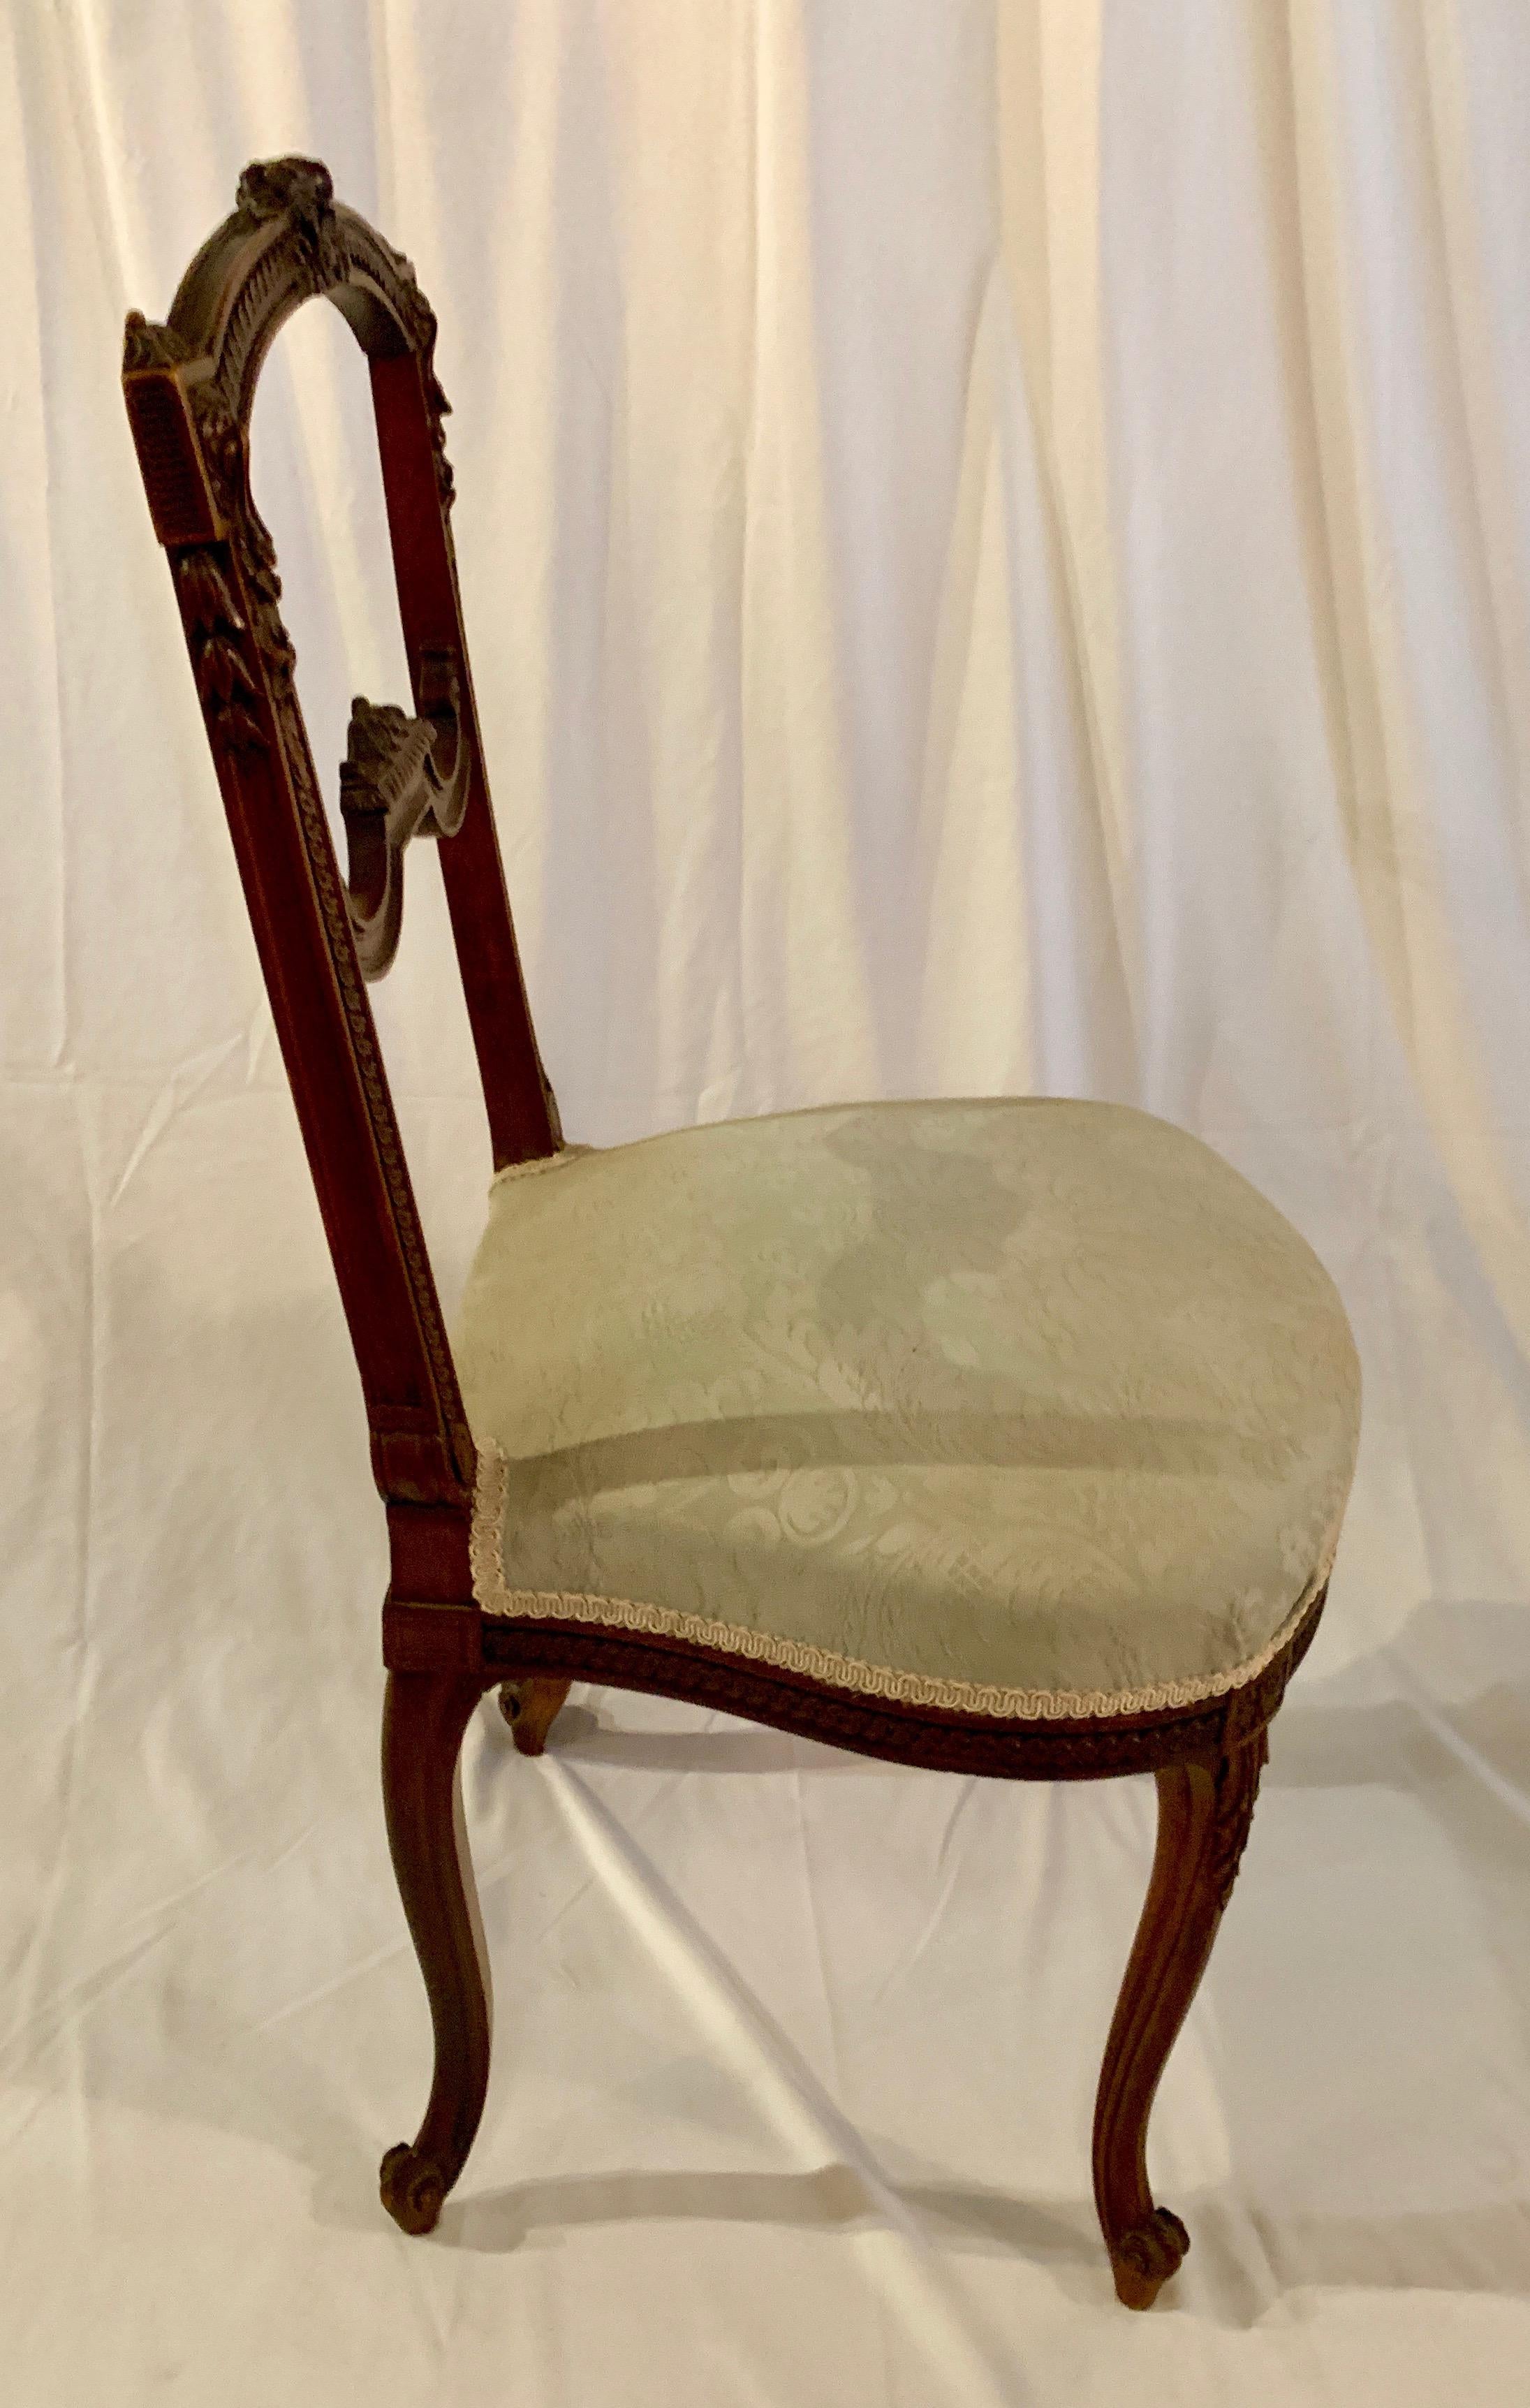 Une petite chaise française joliment sculptée. La chaise d'appoint parfaite pour un salon ou un vestiaire.